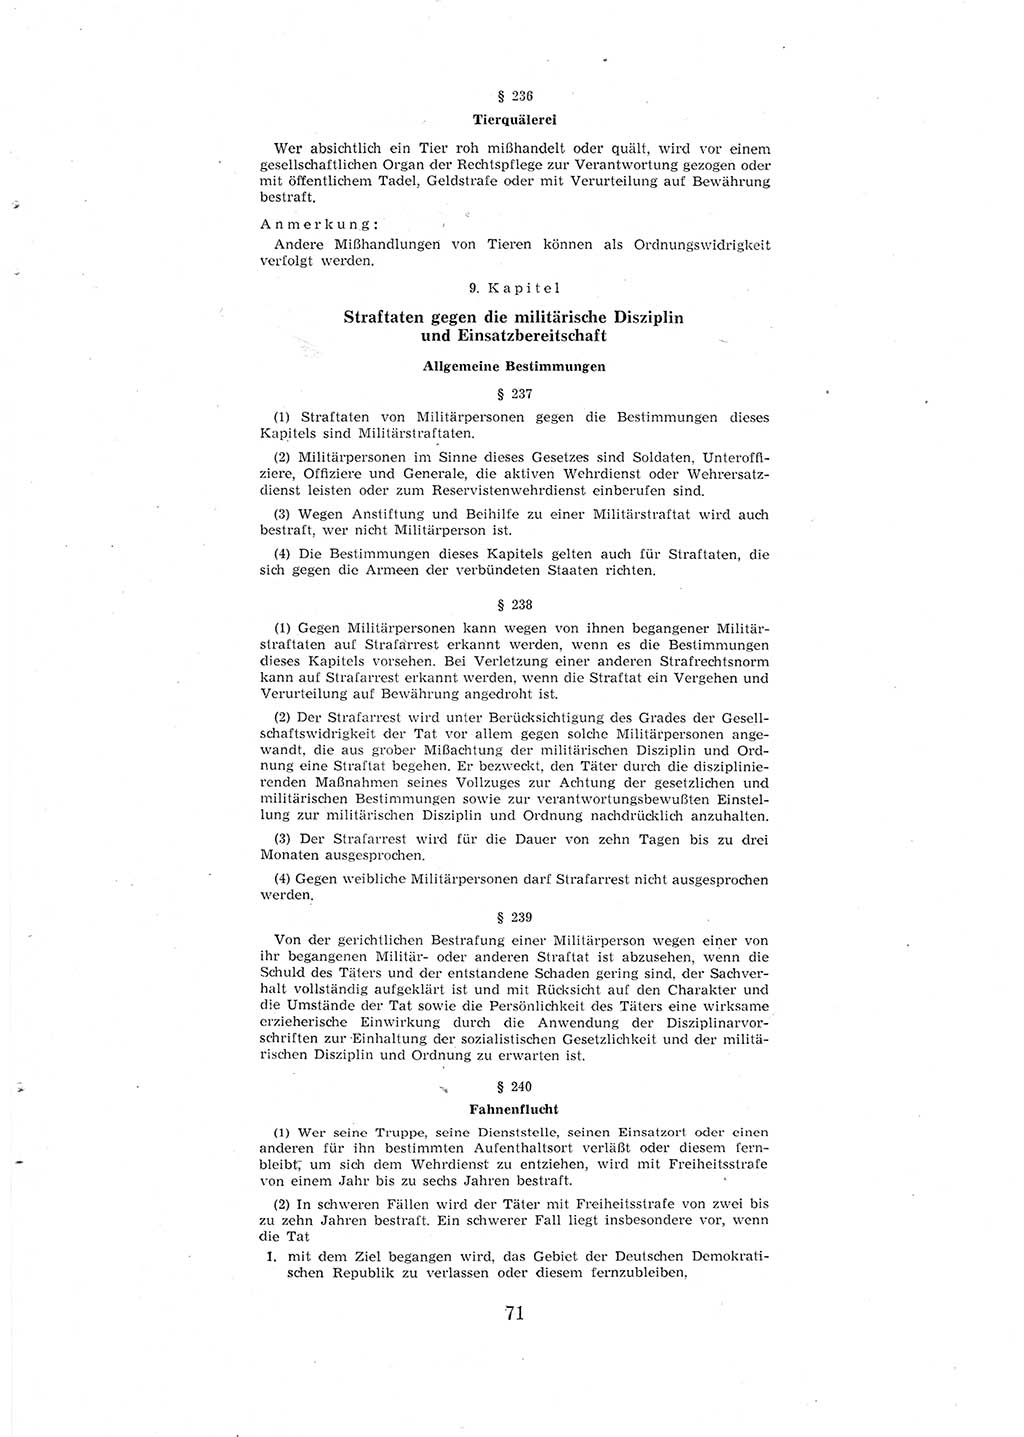 Entwurf des Strafgesetzbuches (StGB) der Deutschen Demokratischen Republik (DDR) 1967, Seite 71 (Entw. StGB DDR 1967, S. 71)